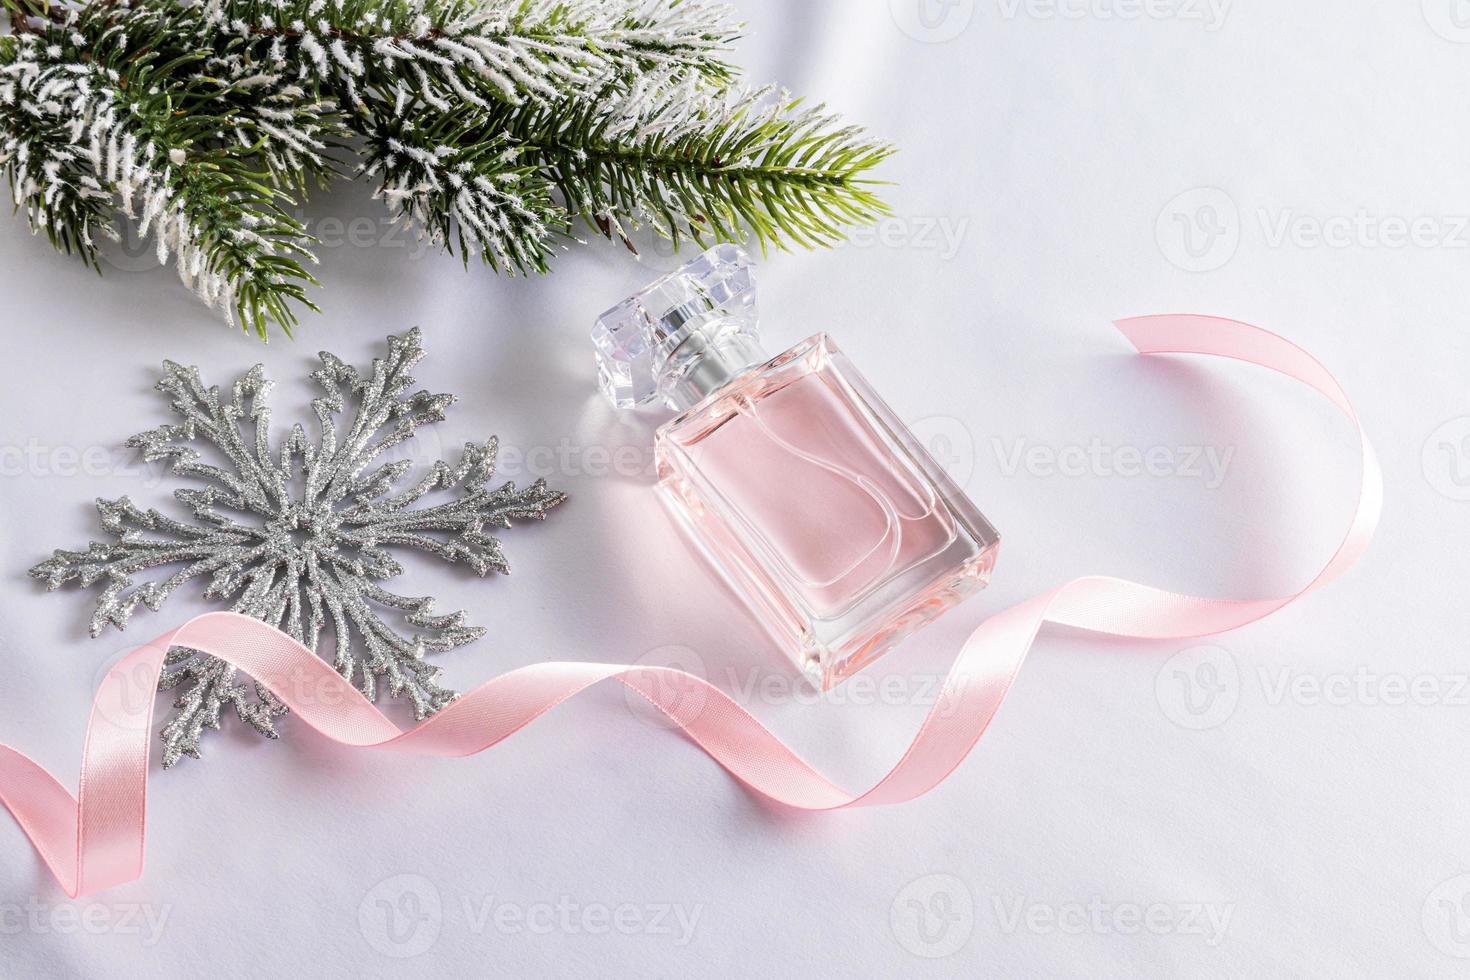 um frasco de perfume feminino floral no fundo das decorações de natal. o conceito de apresentação de um novo ano de uma fragrância ou presente. foto